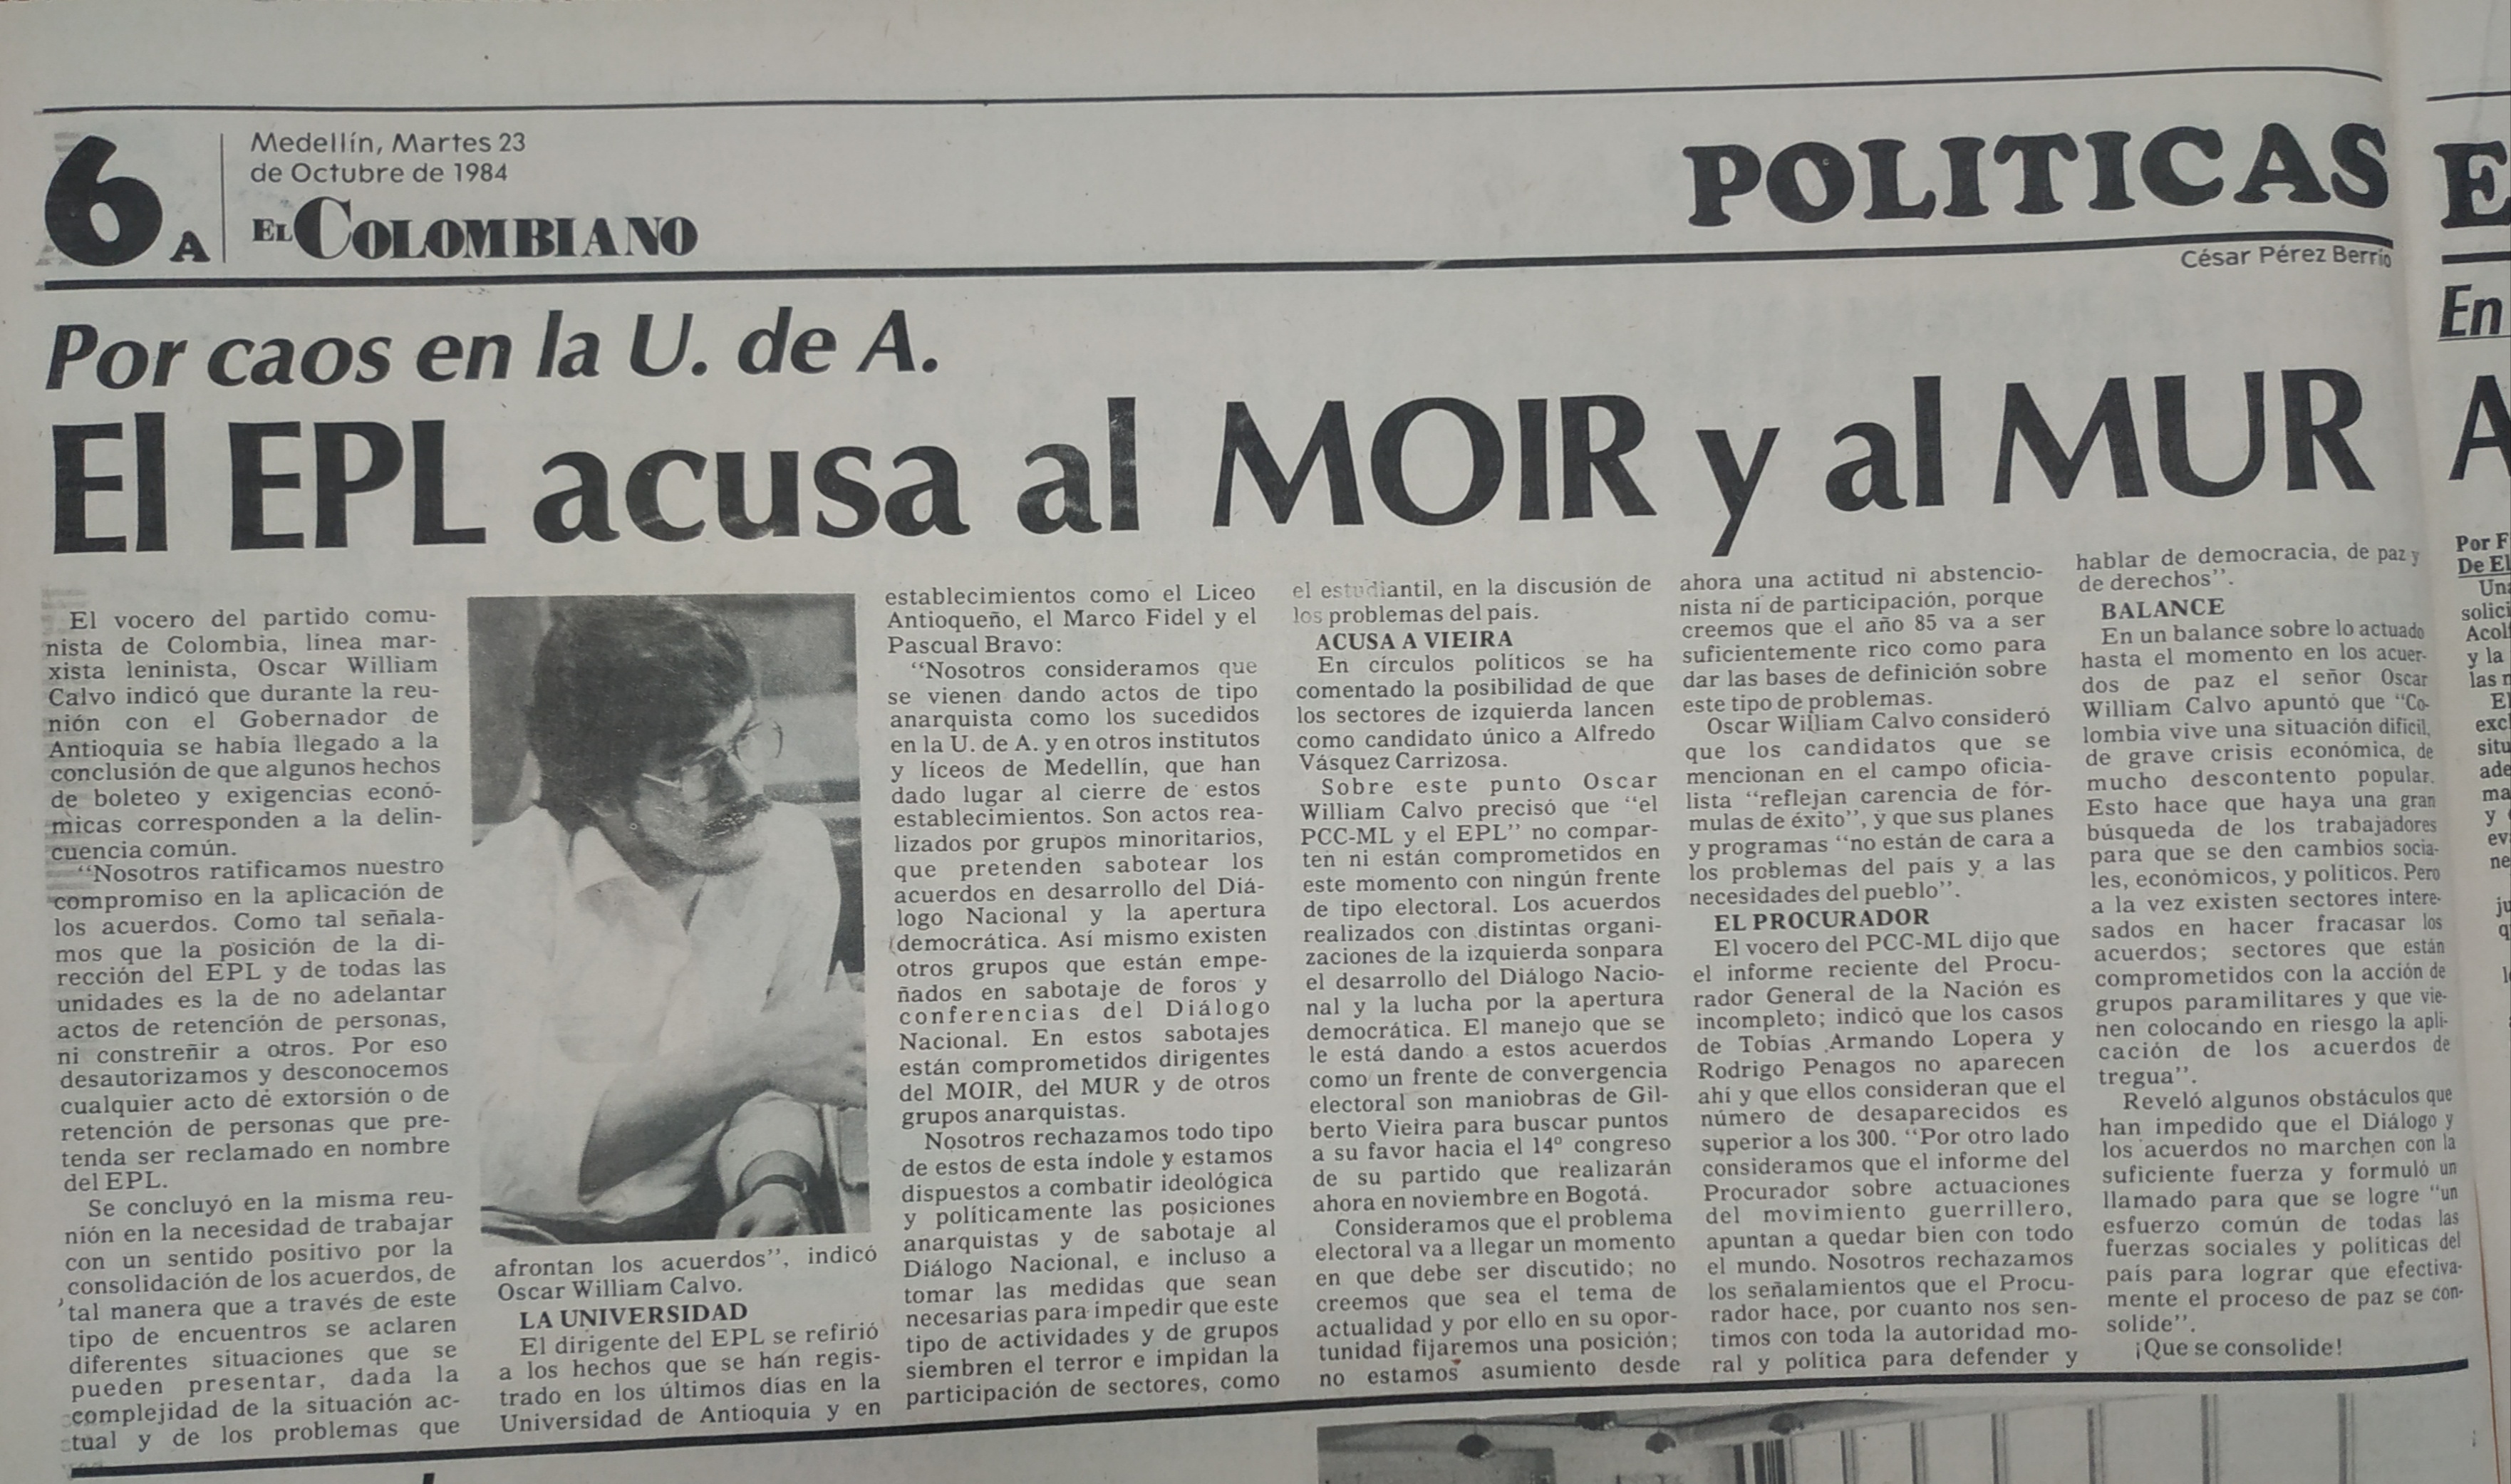 Fotografía tomada de la edición del 23 de octubre de 1984 del periódico El Colombiano.